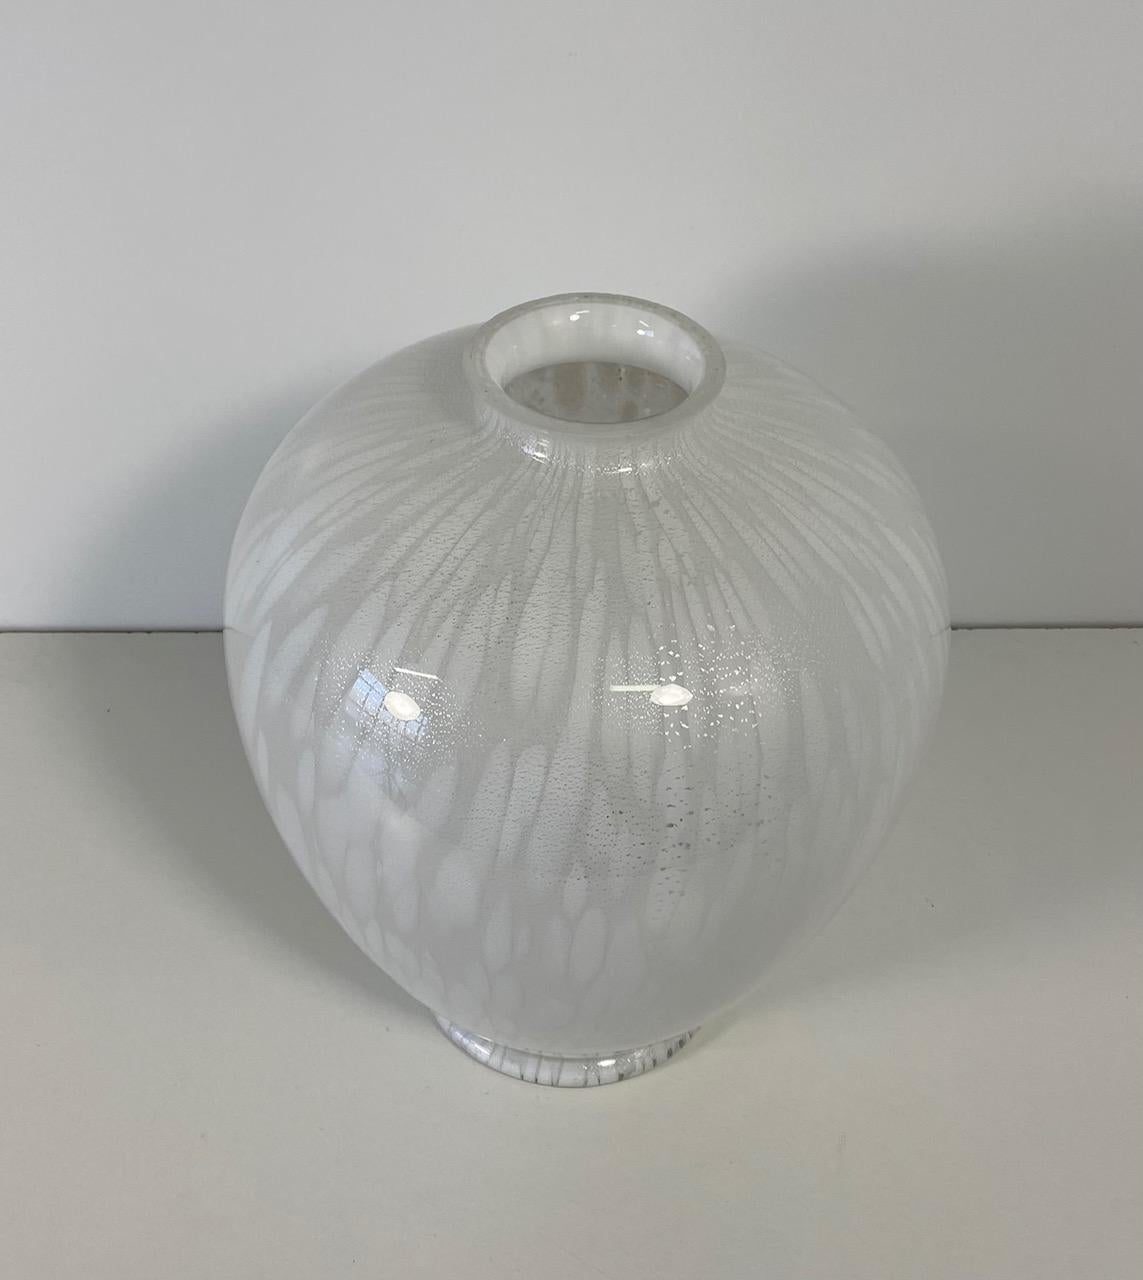 Cet élégant vase a été produit à Murano, Venise (Italie) par des maîtres verriers. 

Le vase présente différentes nuances de blanc créées à l'aide de techniques particulières de traitement du verre et de nombreuses inclusions d'argent.
 